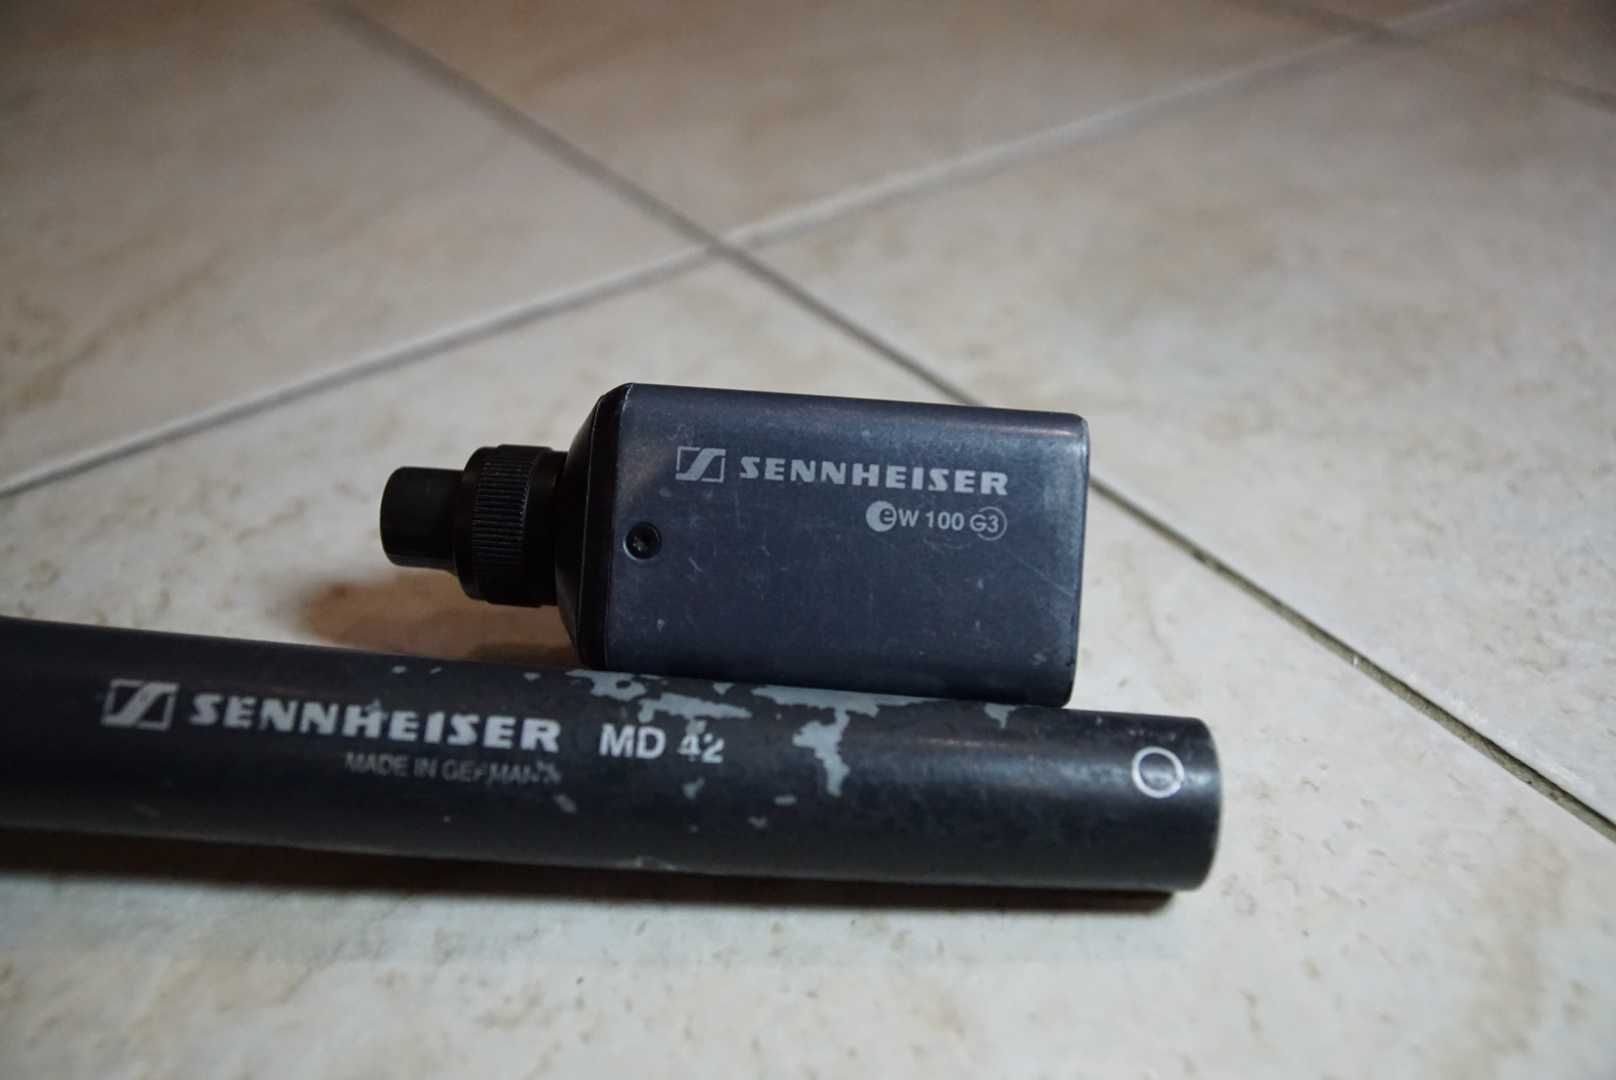 Miкрофон Sennheiser MD 42 з передавачем Sennheiser ew 100 G3